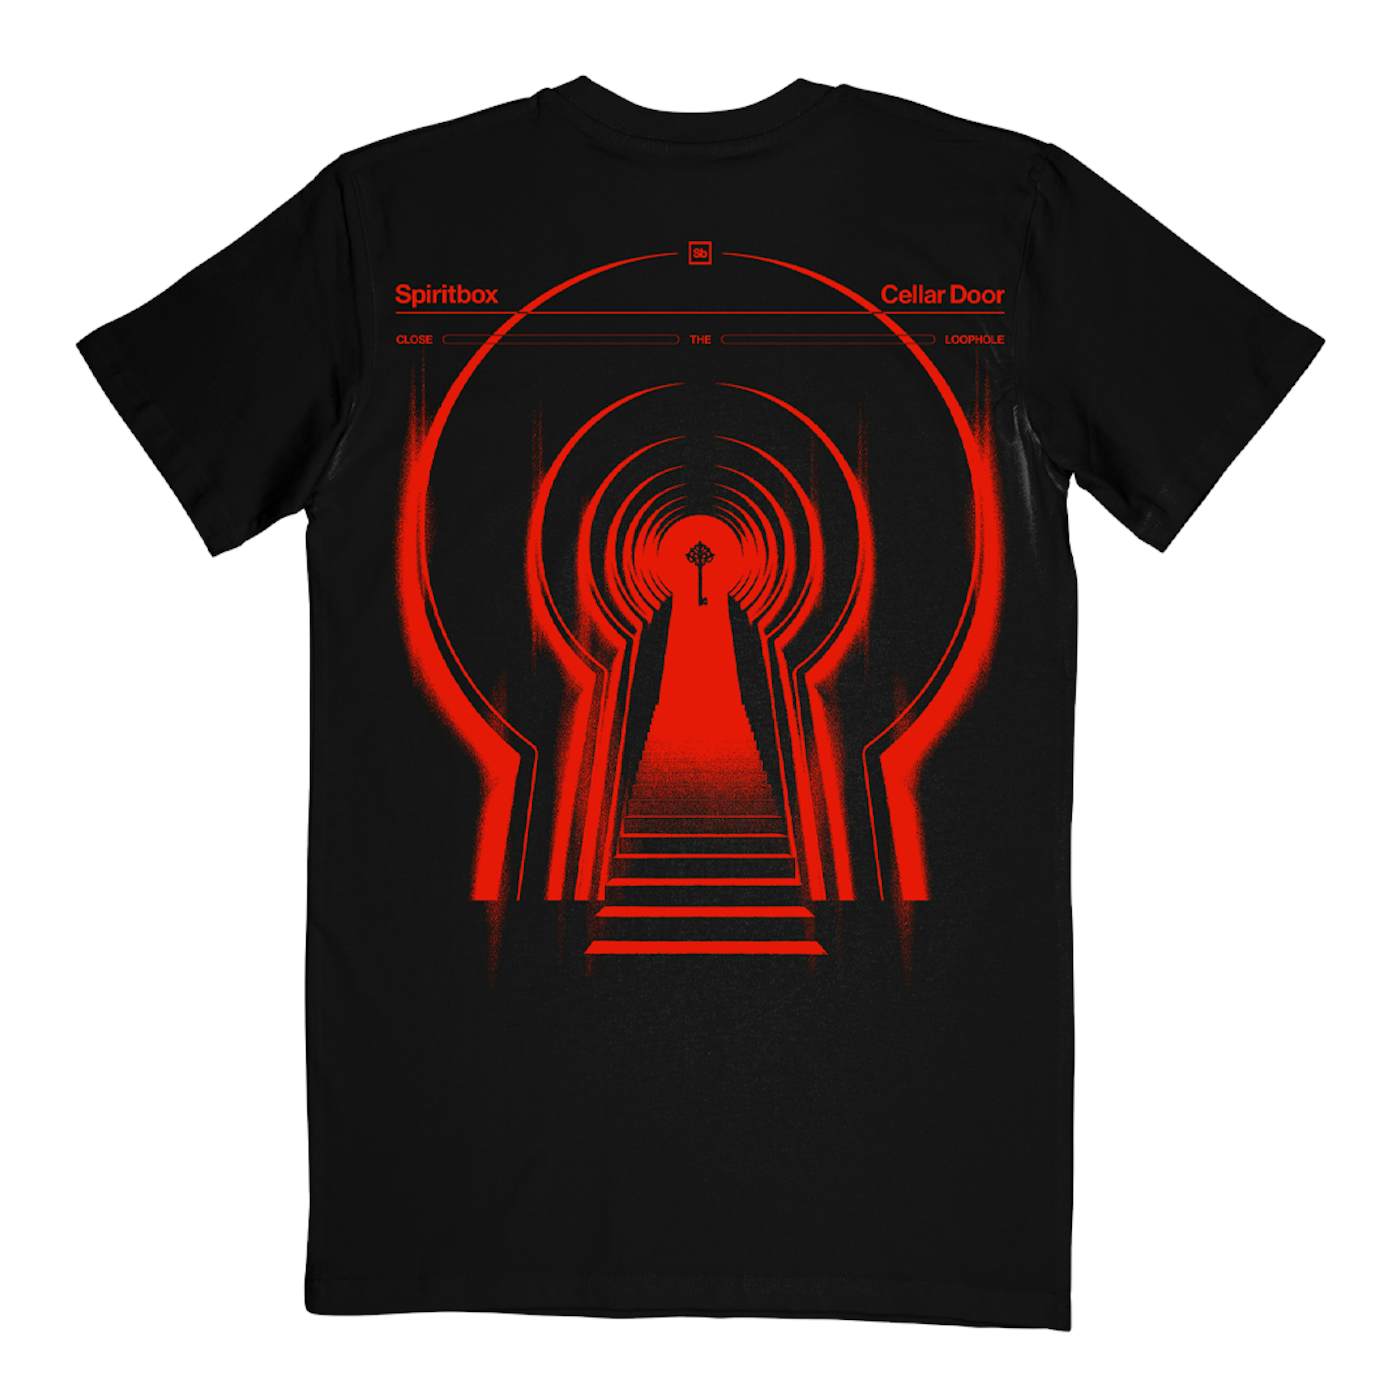 Spiritbox "Cellar Door" T-Shirt